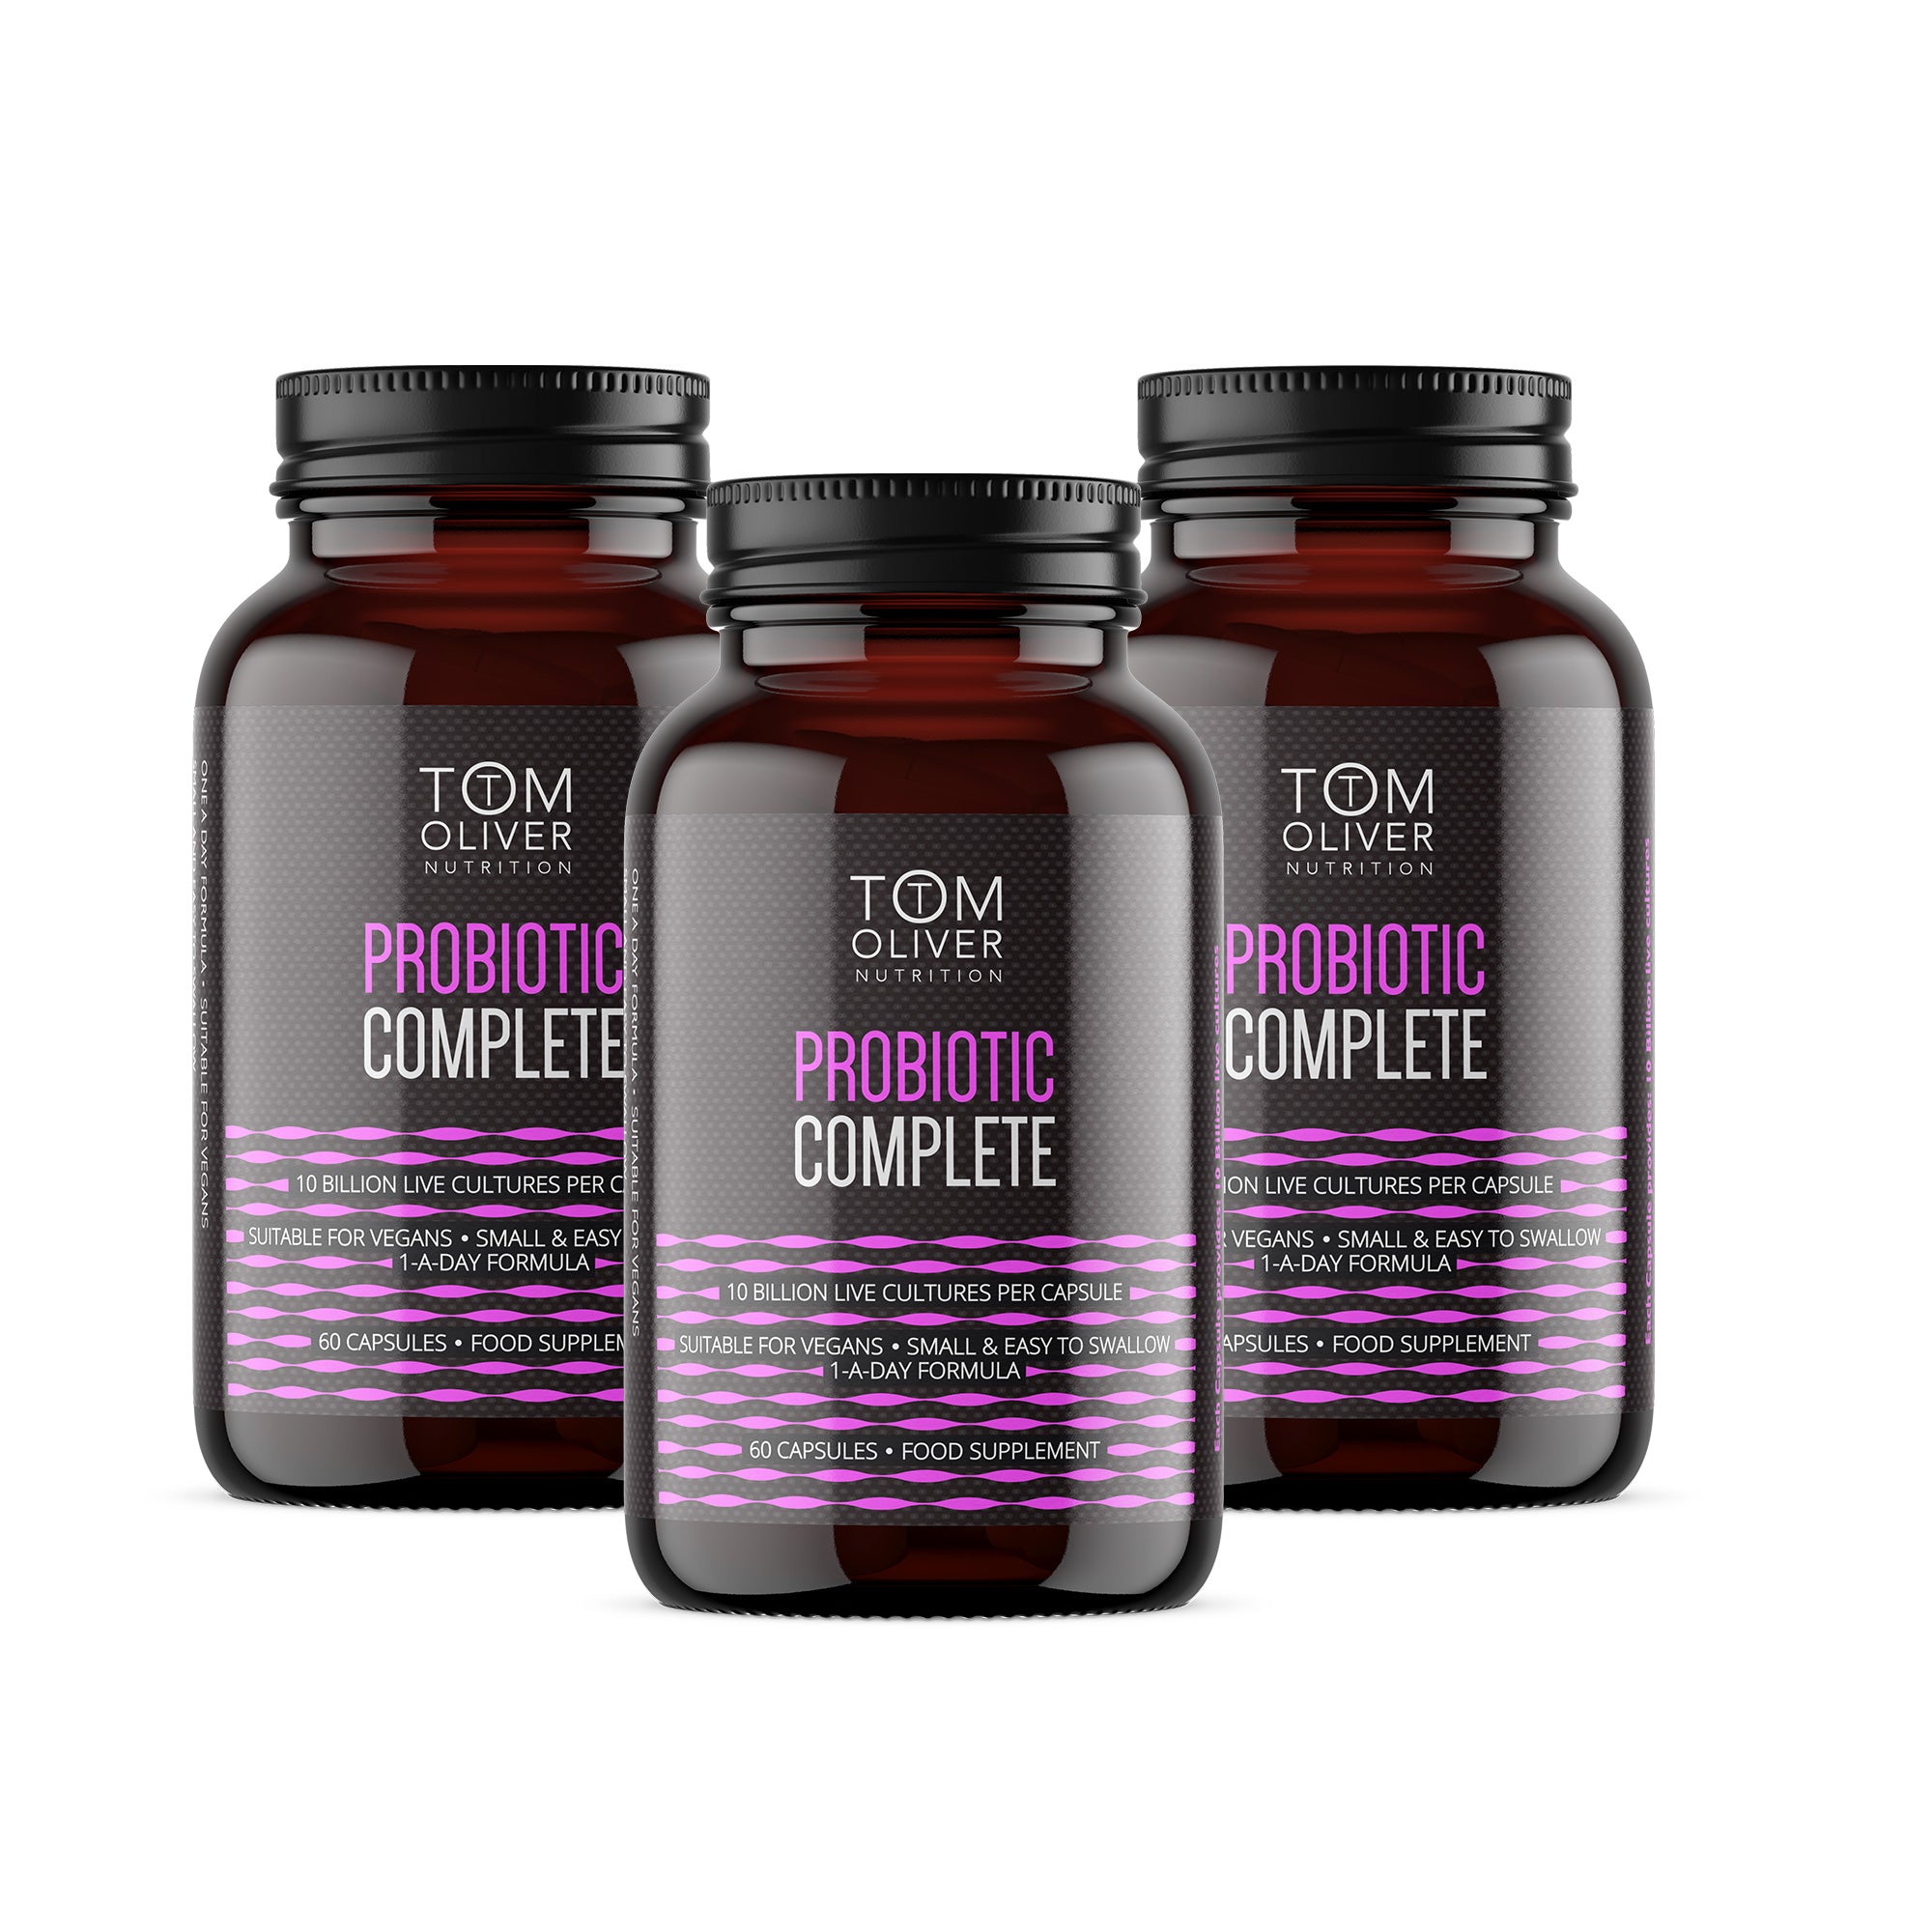 Probiotic Complete Offer Pack (3 bottles)